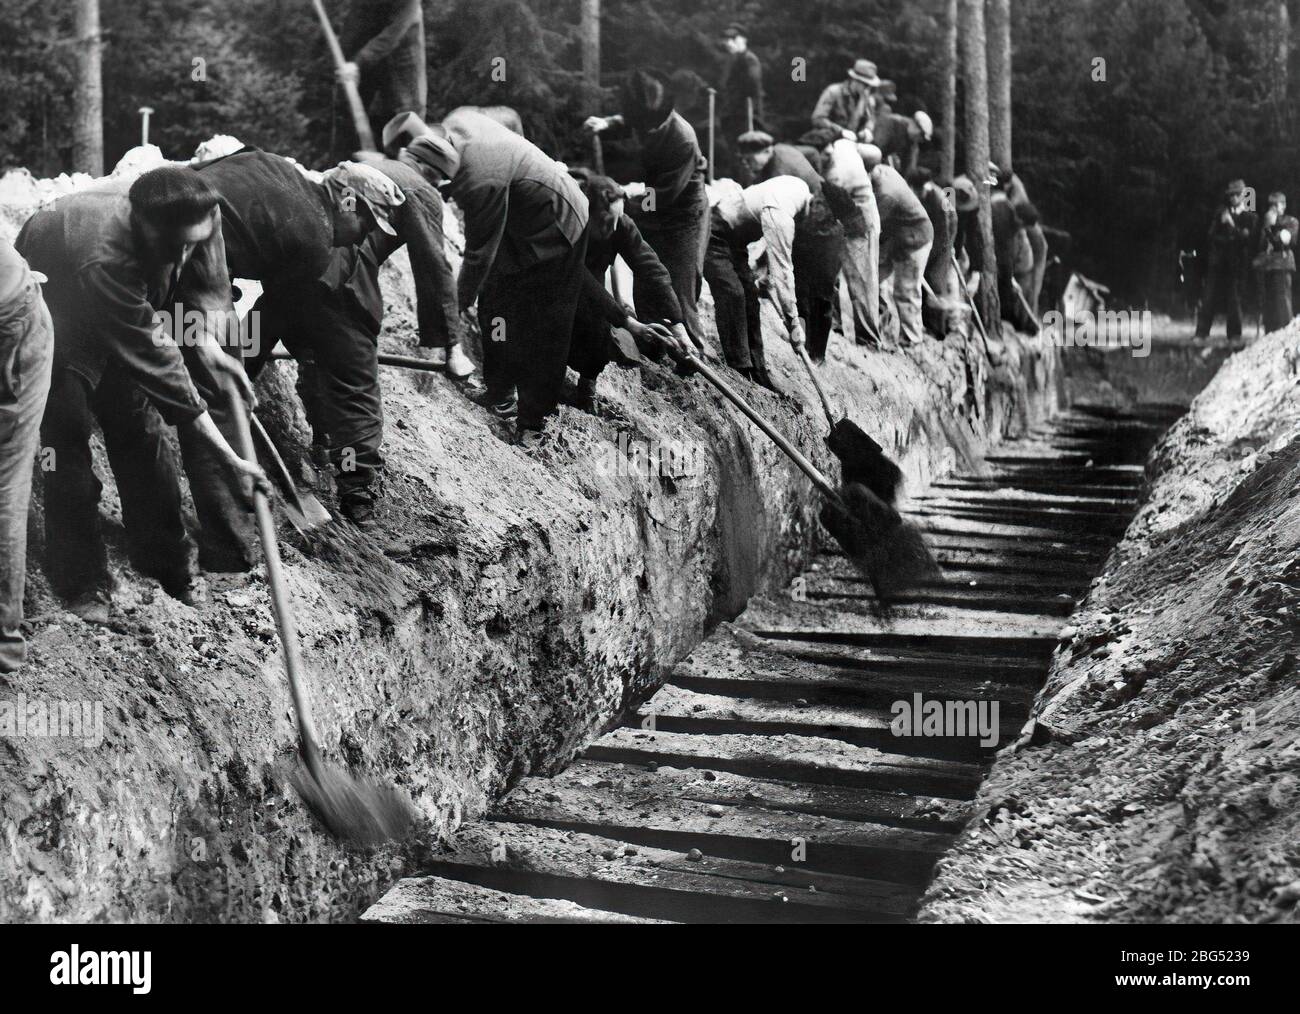 Documentaire de la seconde Guerre mondiale. Les libérateurs britanniques du camp de concentration de Bergen-Belsen obligent les responsables nazis à exhumer et à enterrer correctement les corps d'environ 100 prisonniers politiques qui y ont été tués, en octobre 1945 Banque D'Images